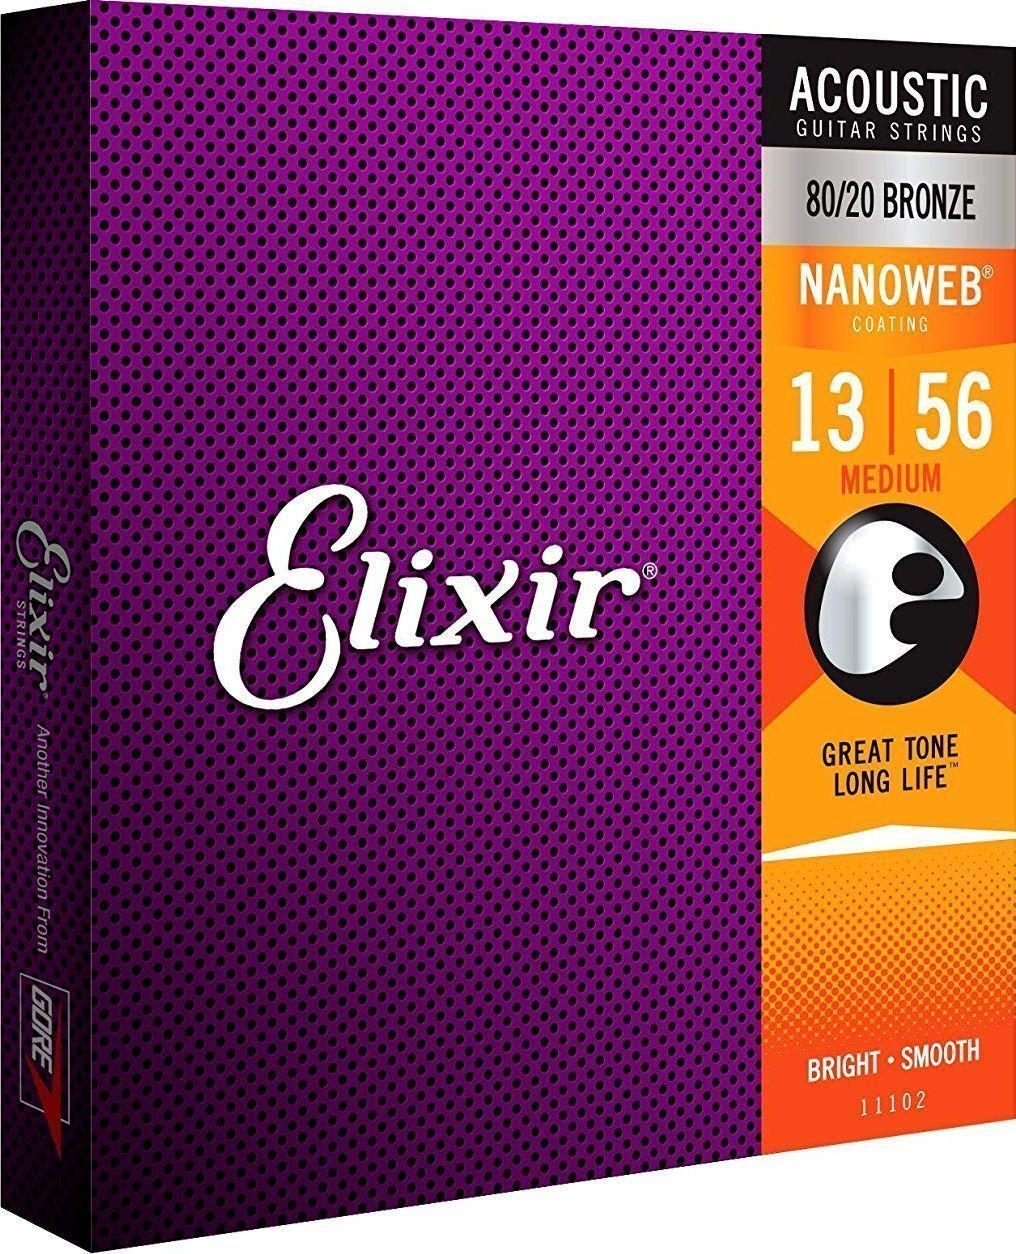 Akusztikus gitárhúrok Elixir 11102 Nanoweb 13-56